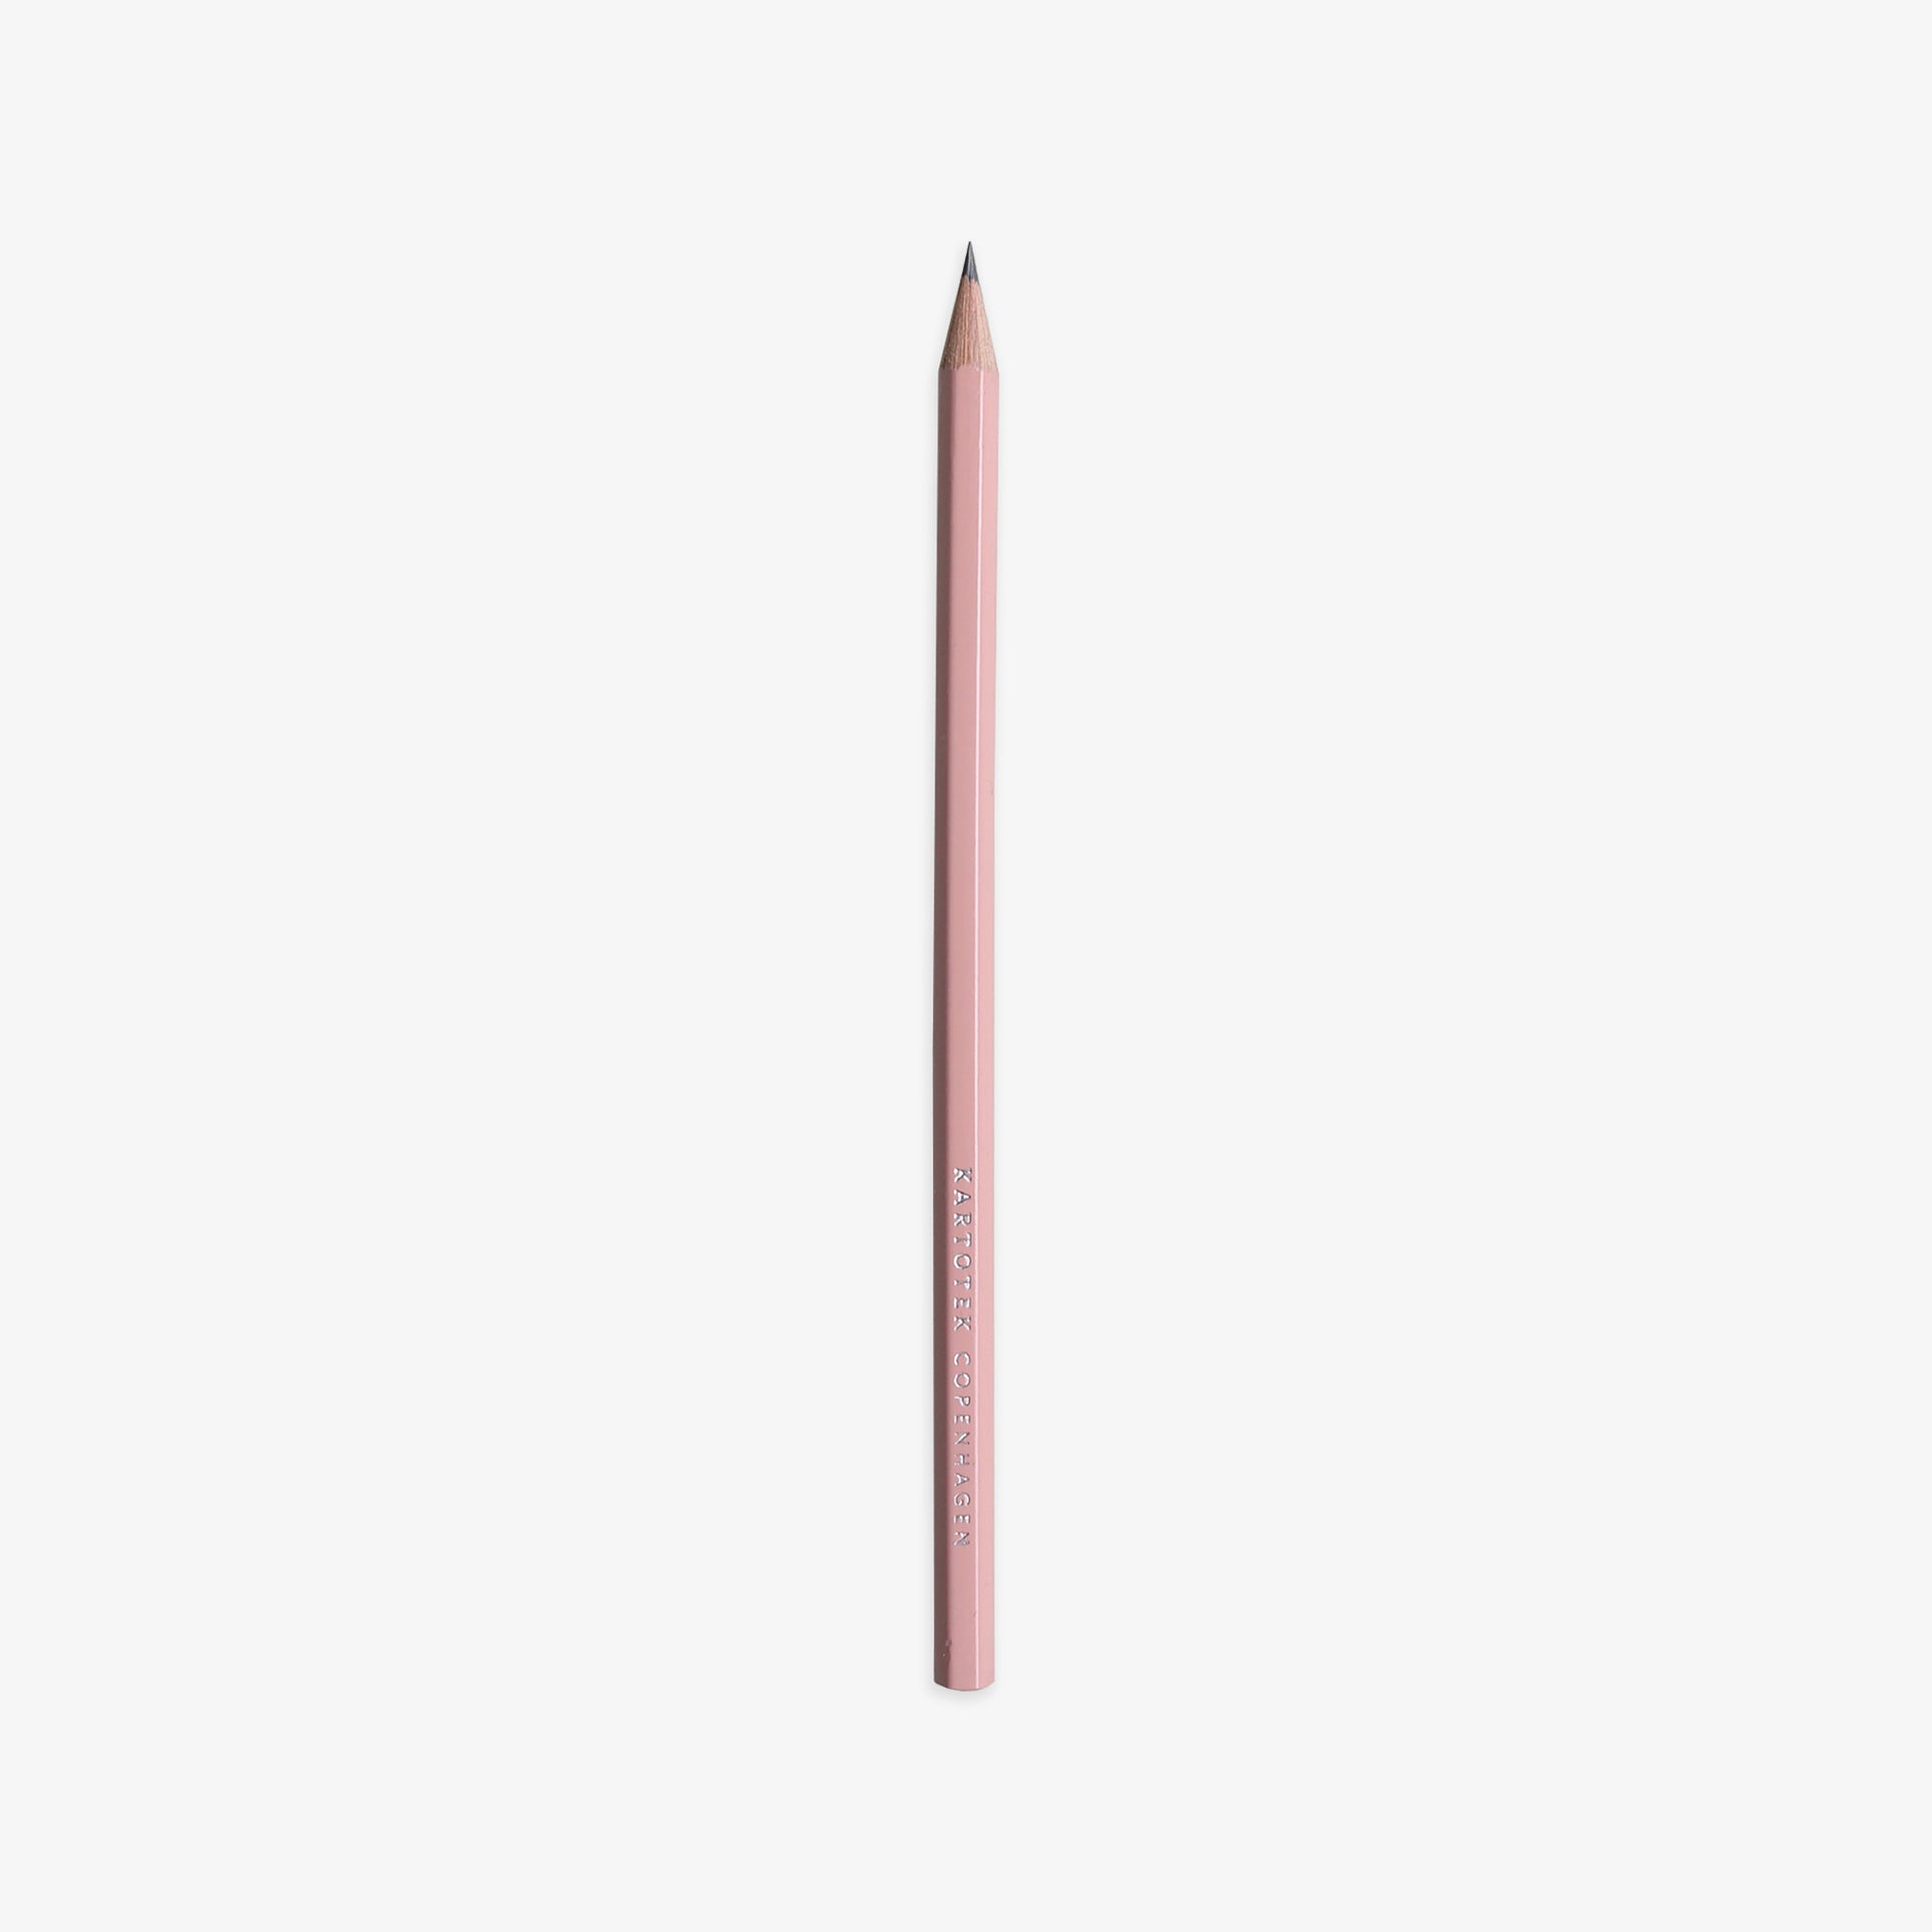 Lyserød blyant i cedertræ fra Kartotek, 20 kr.